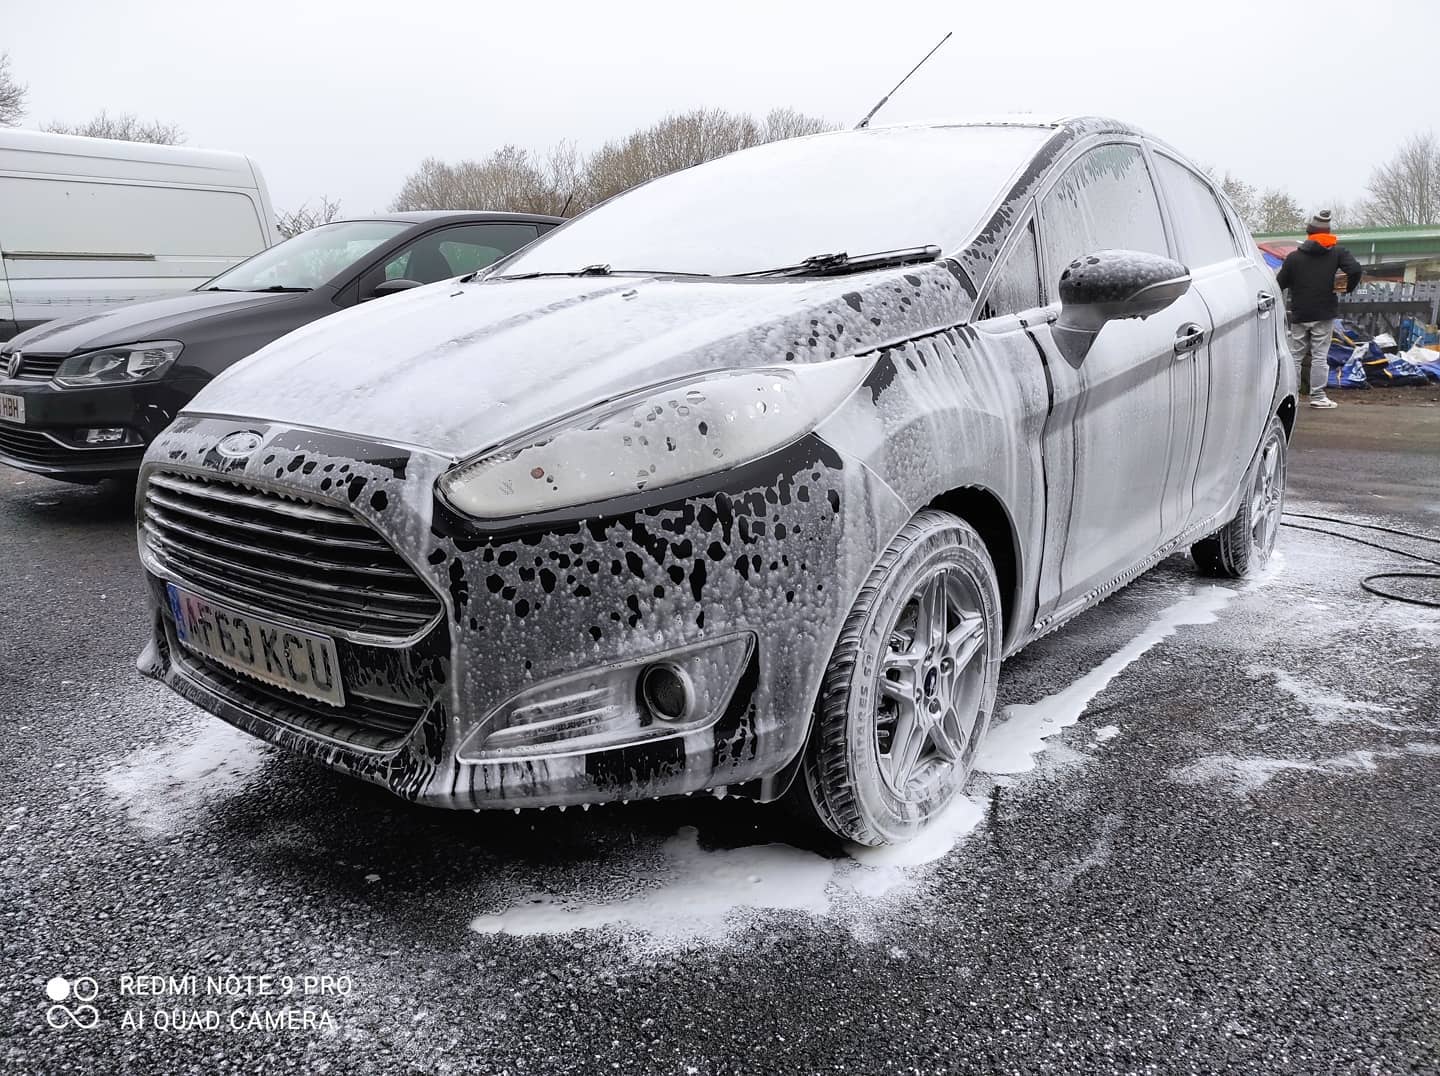 Snowfoam on a Ford